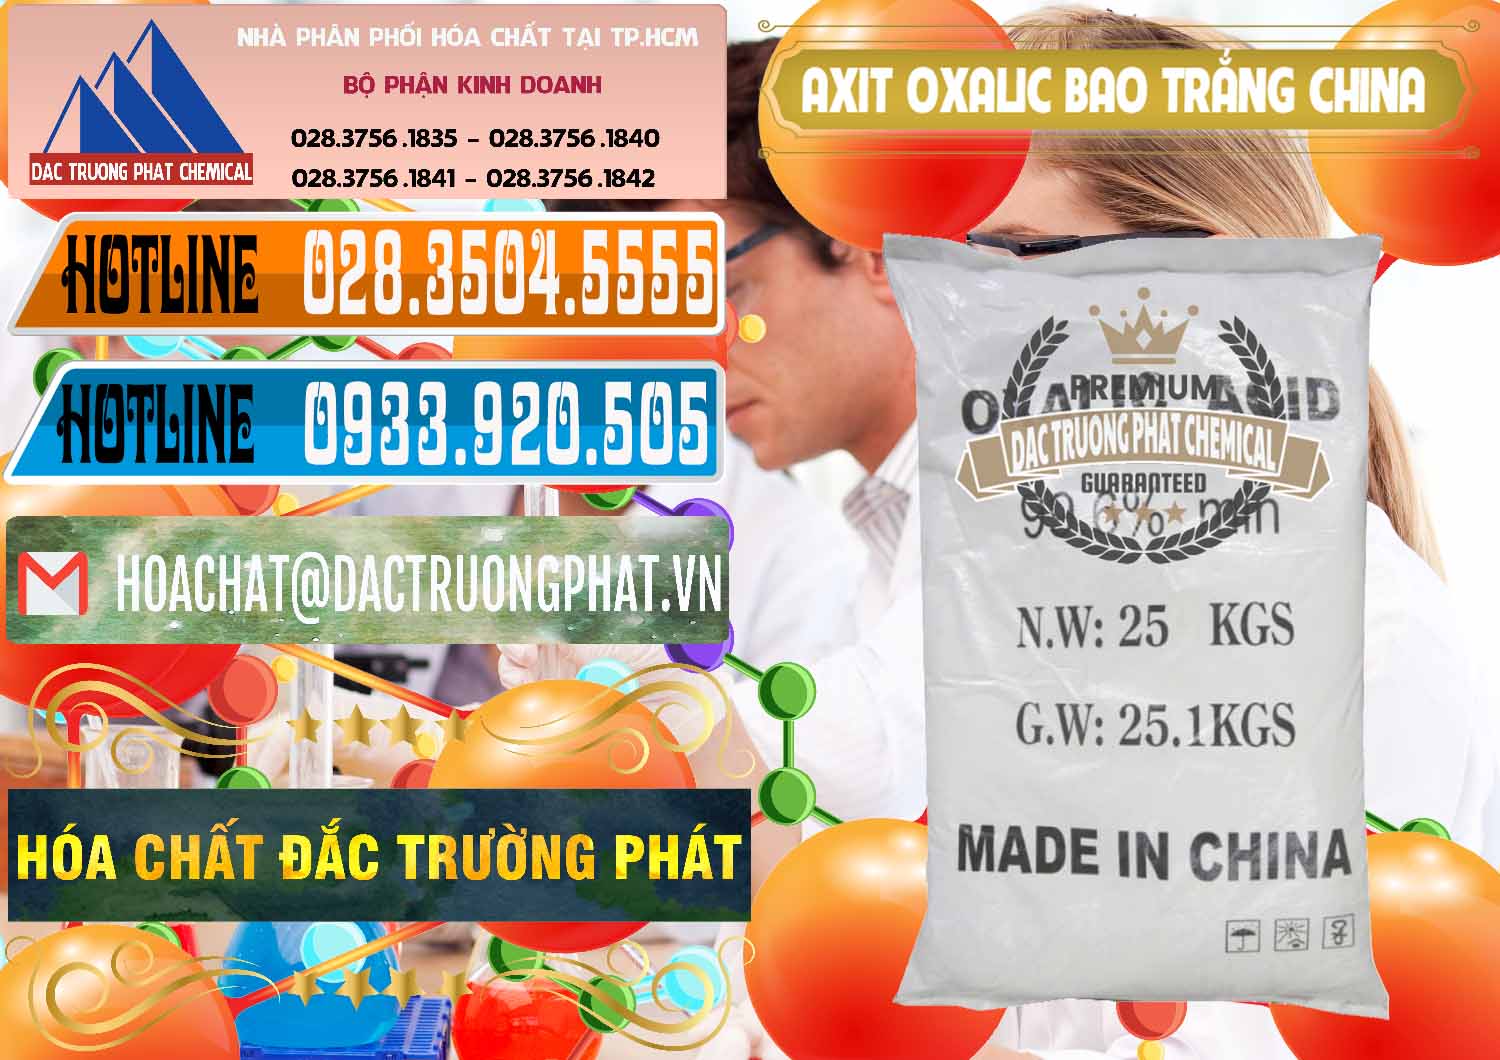 Cty cung cấp _ bán Acid Oxalic – Axit Oxalic 99.6% Bao Trắng Trung Quốc China - 0270 - Chuyên bán & cung cấp hóa chất tại TP.HCM - stmp.net